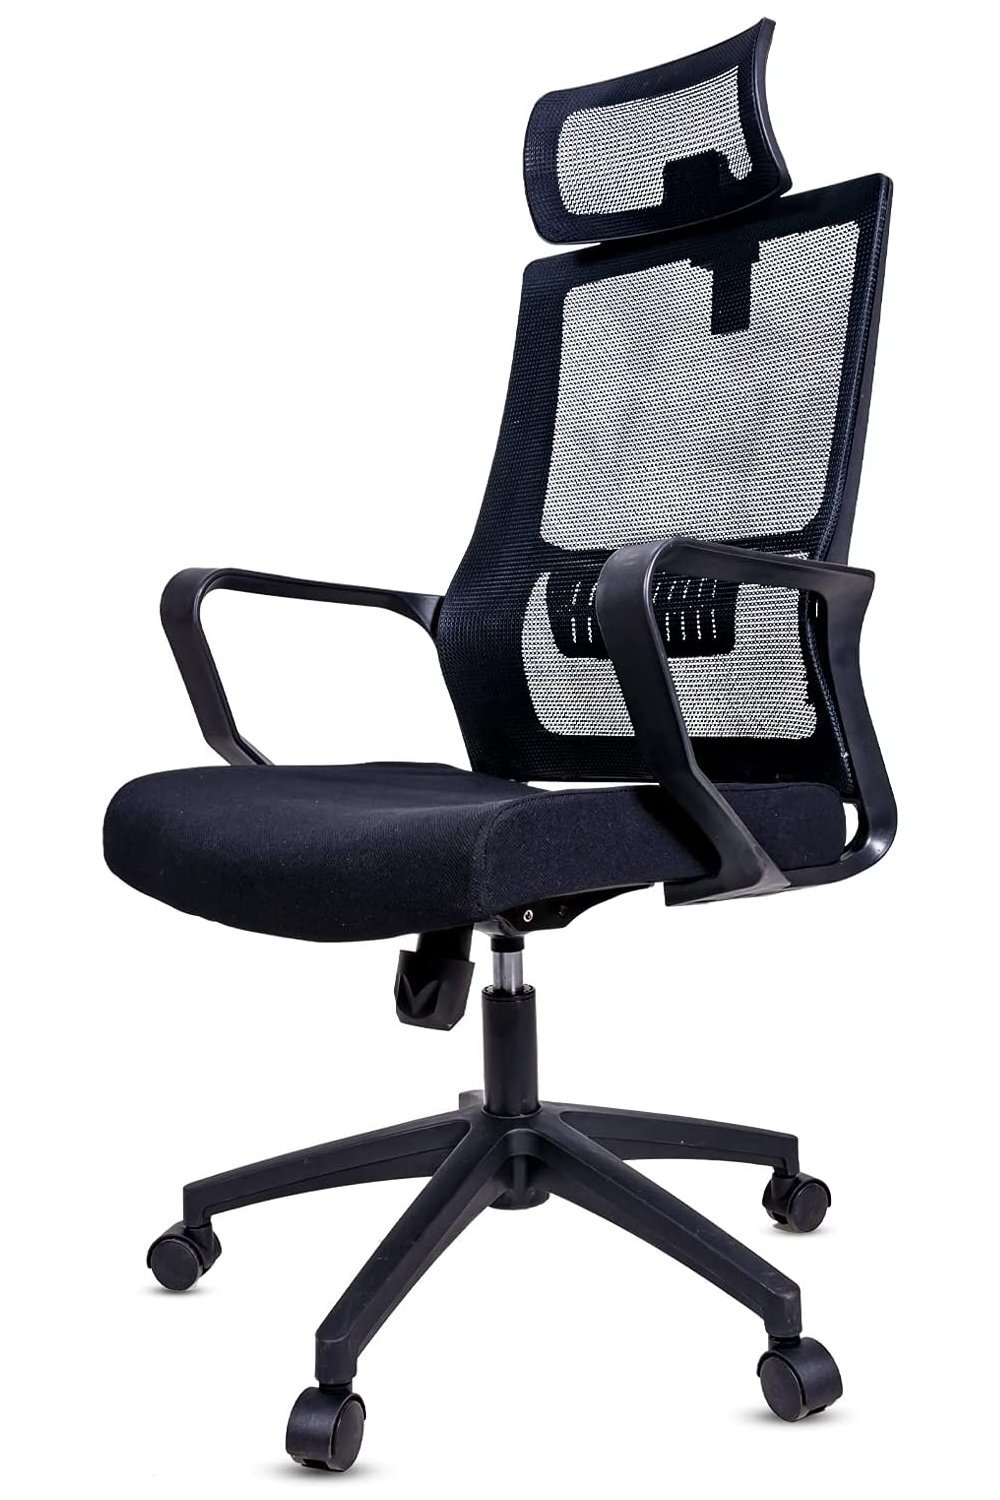 https://assets.wfcdn.com/im/94589114/compr-r85/1609/160927922/berkli-polyesterpolyester-blend-executive-chair-with-headrest.jpg